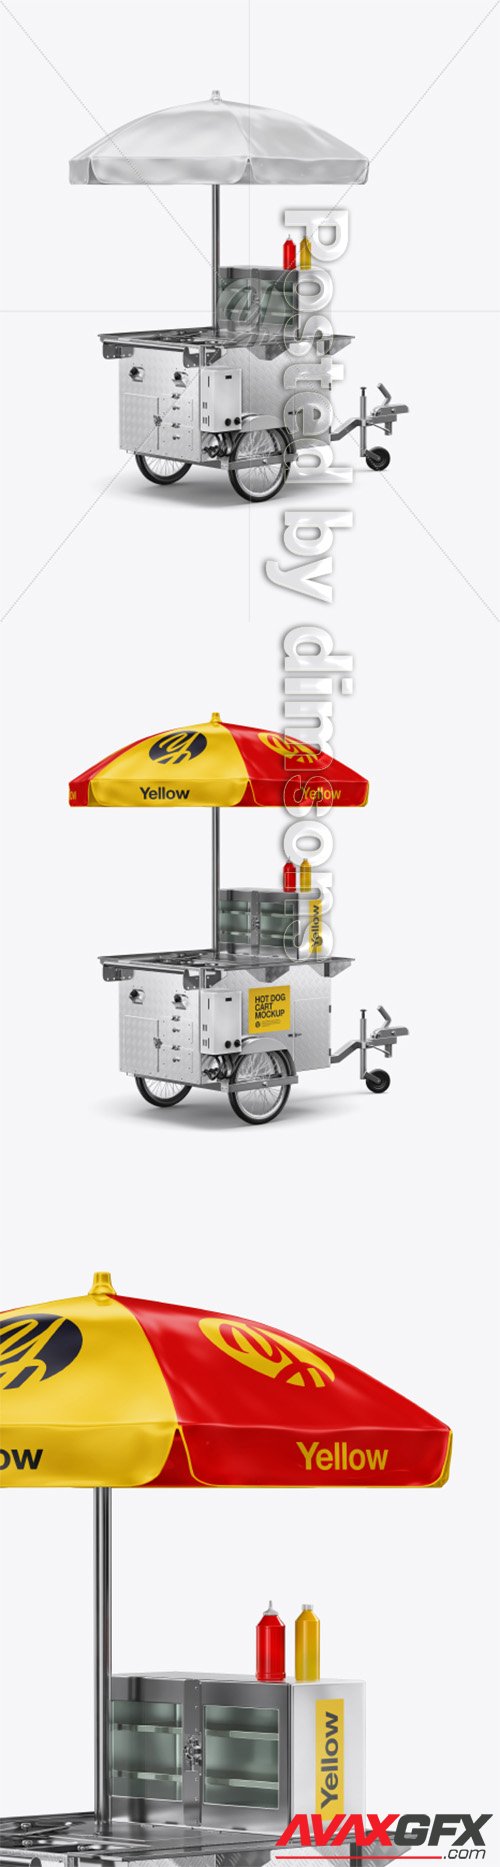 Hot Dog Cart Mockup - Back Half-Side View 39935